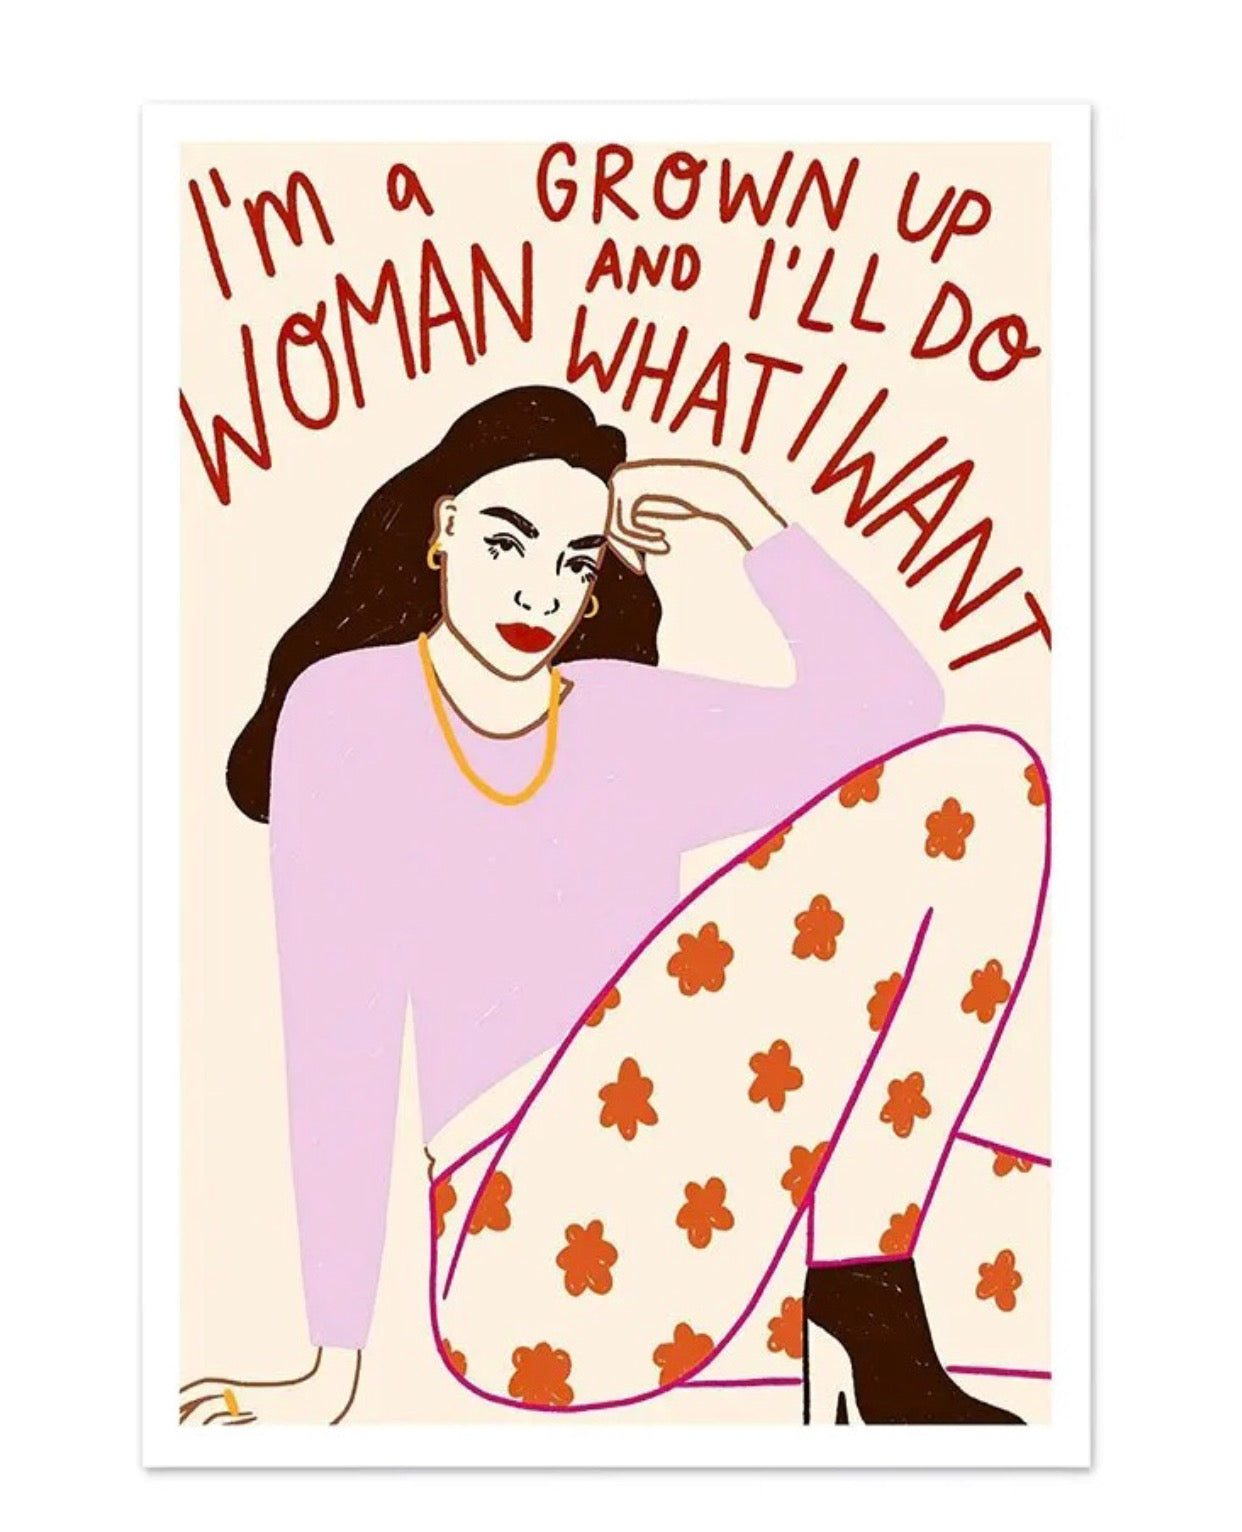 "i'm a grown up woman and i'll do what i want" poster